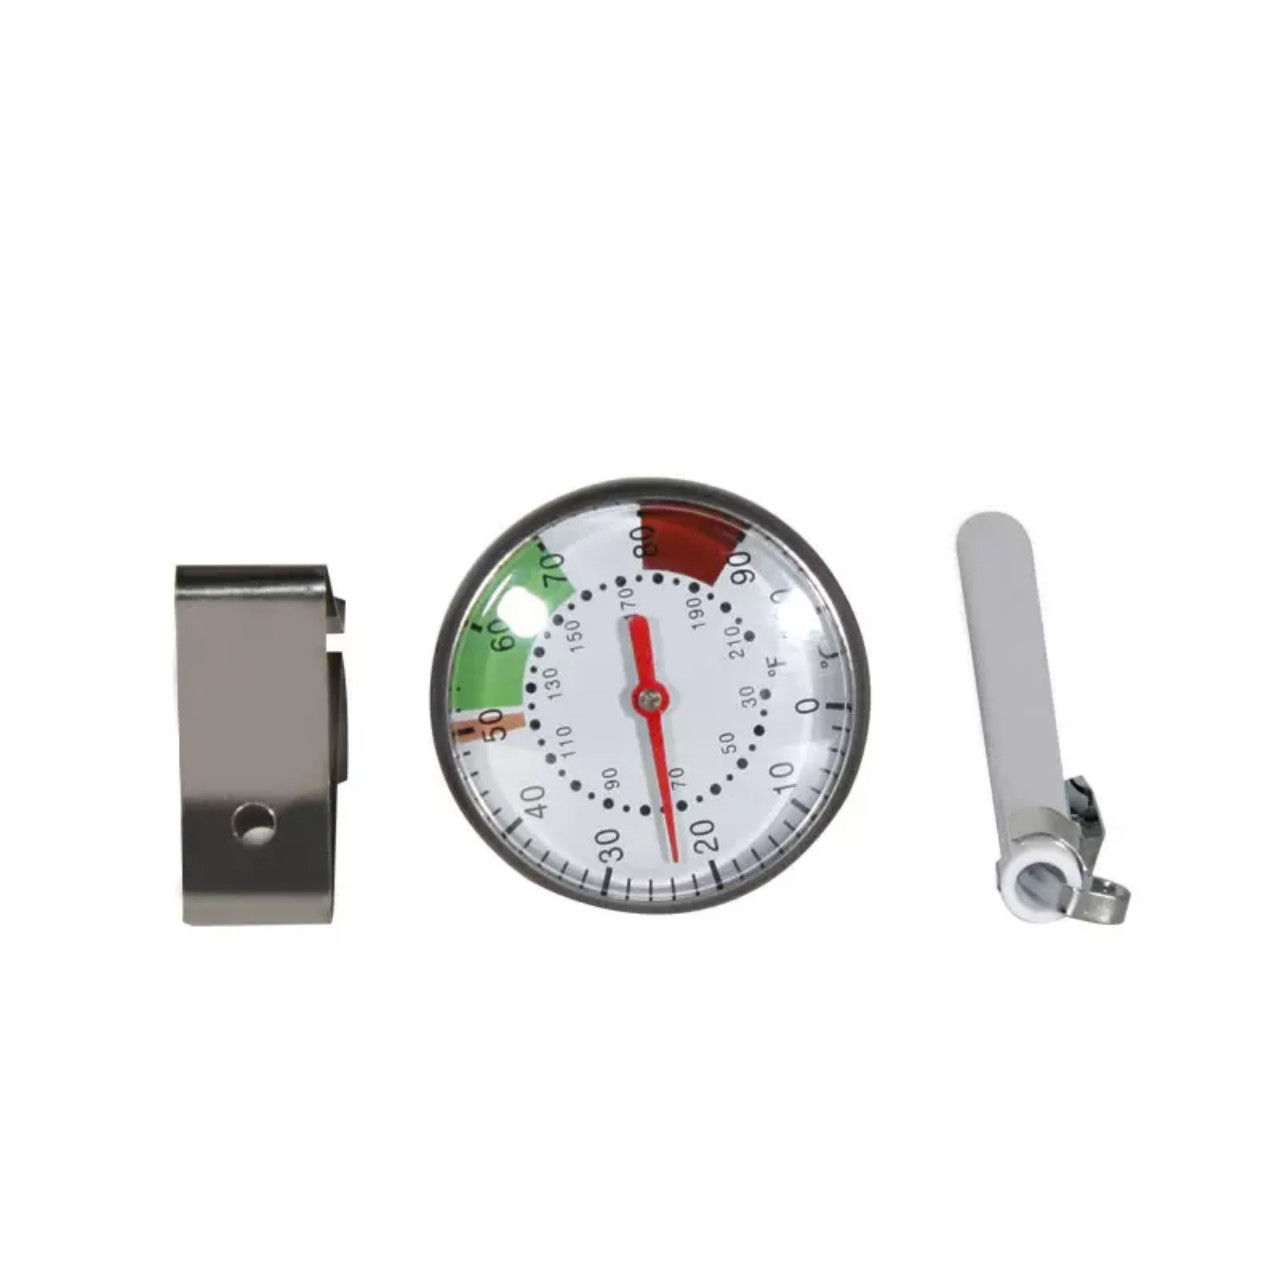 Nhiệt kế - dụng cụ đo nhiệt độ - màu trắng - chất liệu kim loại - kích thước 24 cm